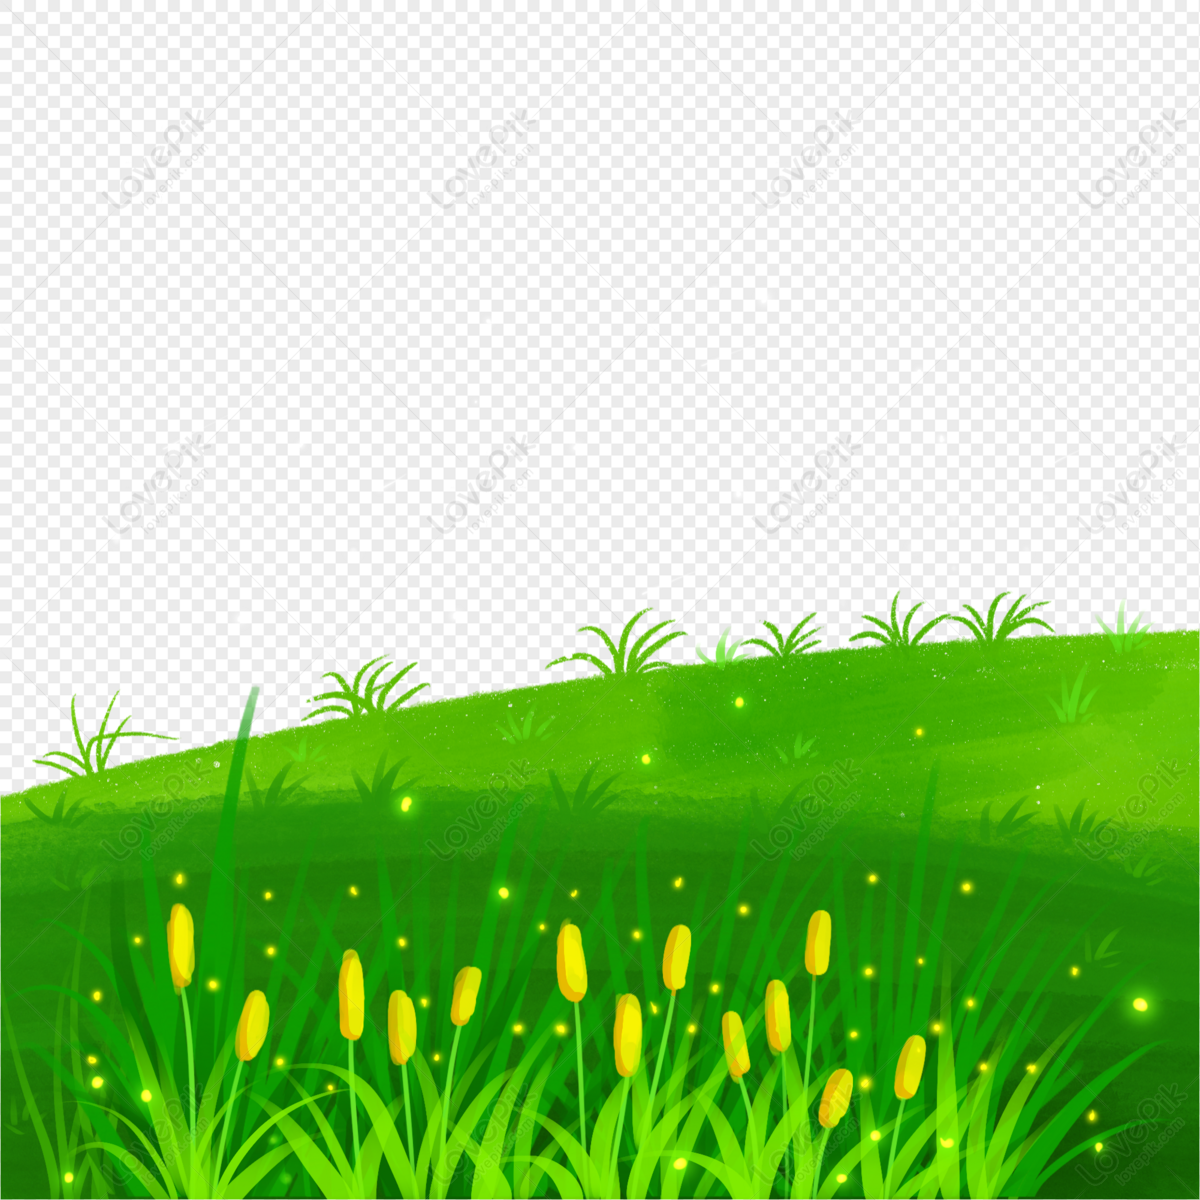 Hình ảnh cây cỏ ngát xanh - PNG